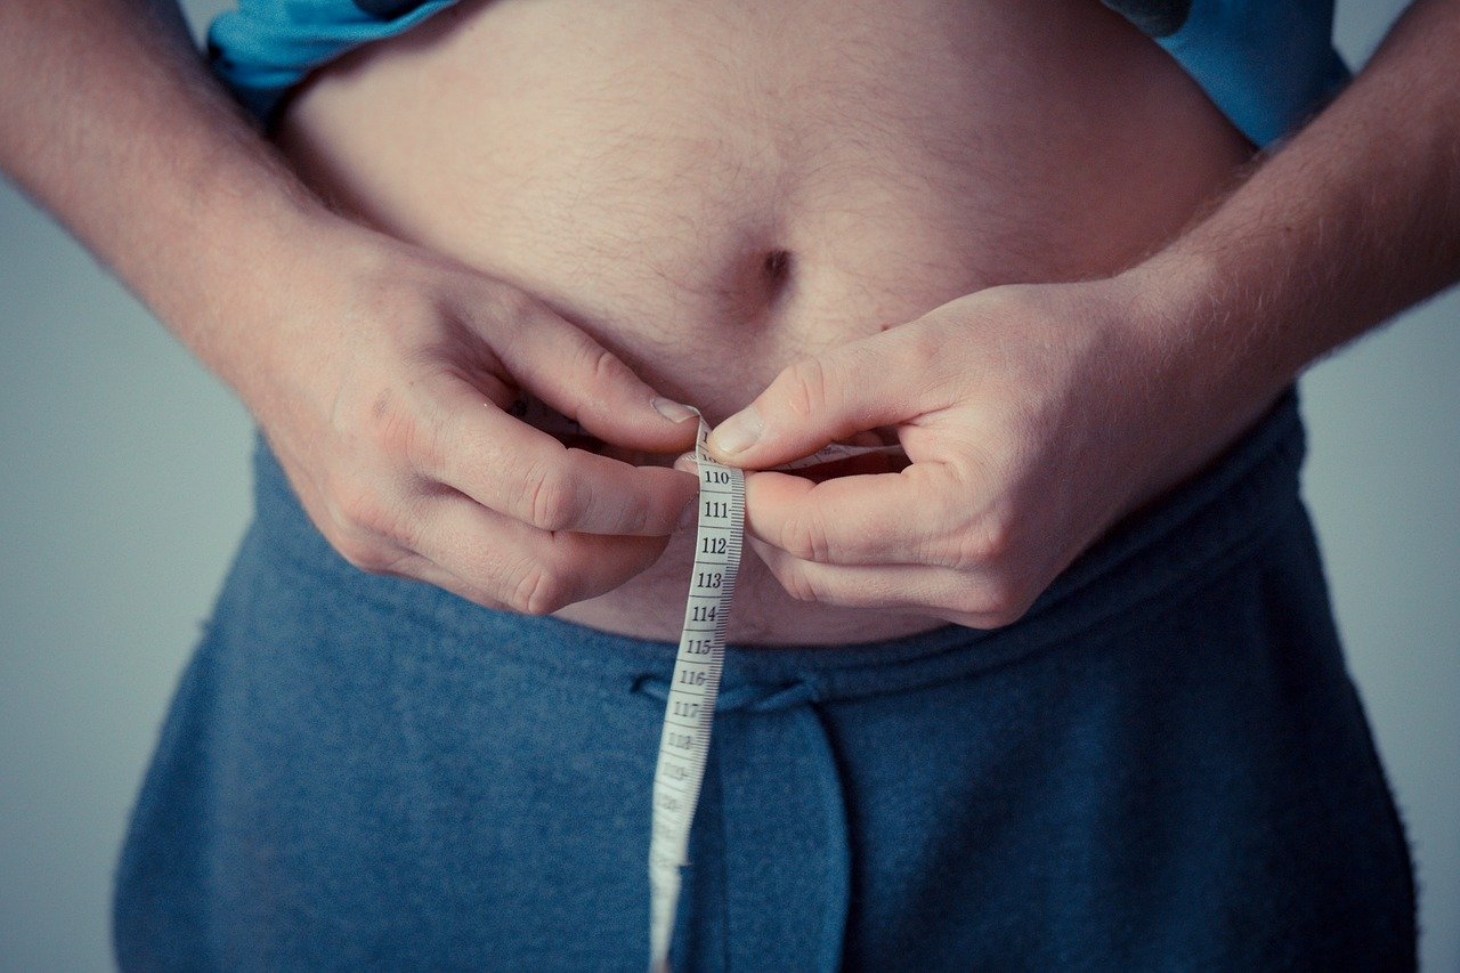 Pesquisa internacional investiga a relação entre a obesidade e a Covid-19 | Jornal da Orla